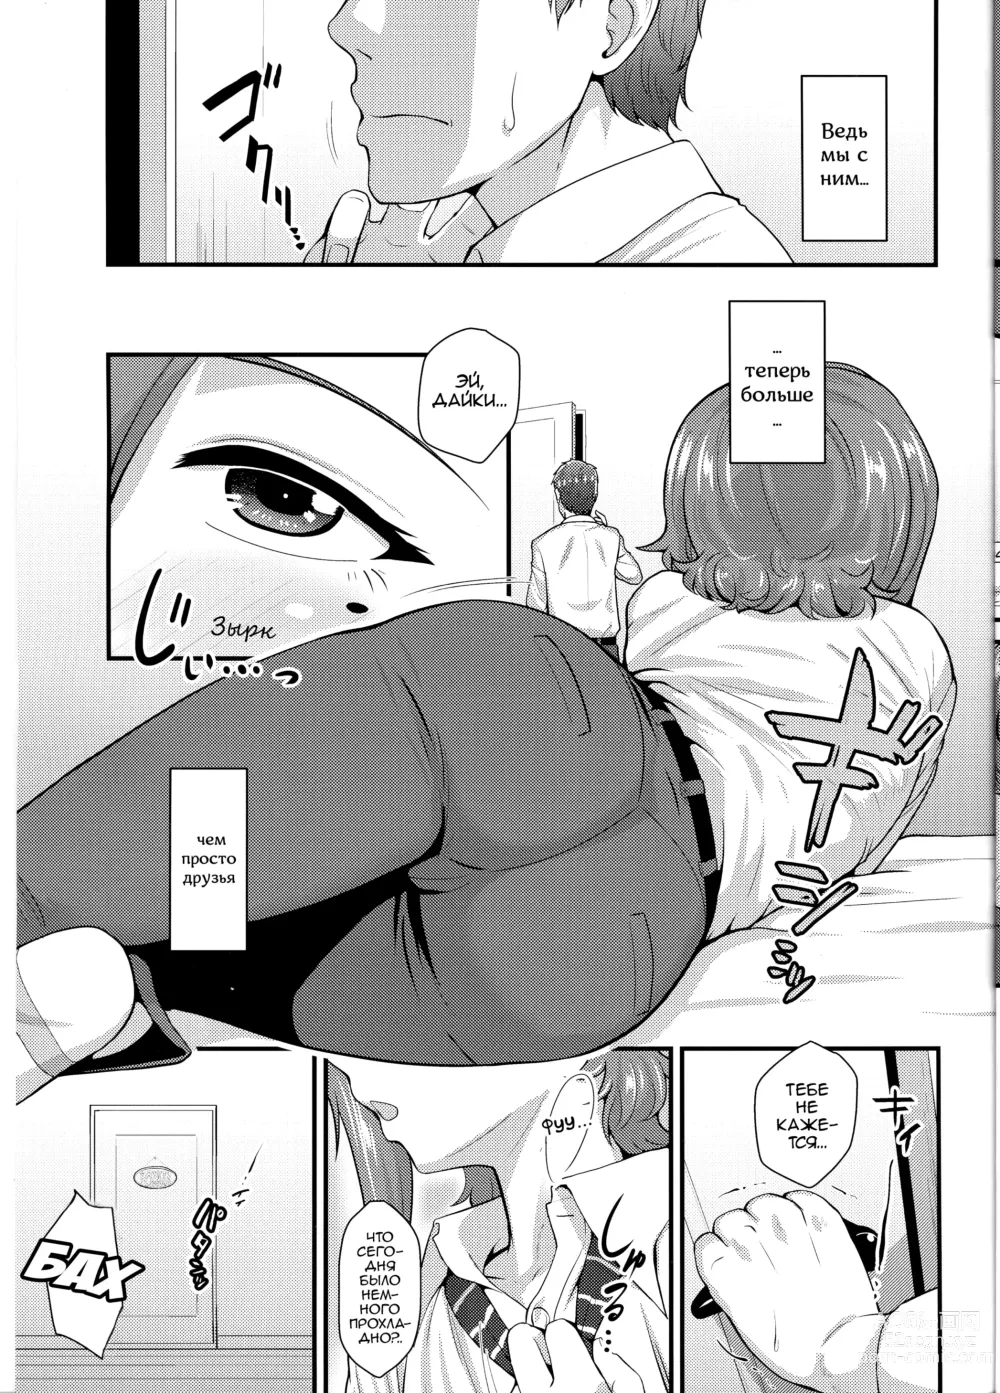 Page 6 of doujinshi Этот парень меня очаровал Зимняя глава